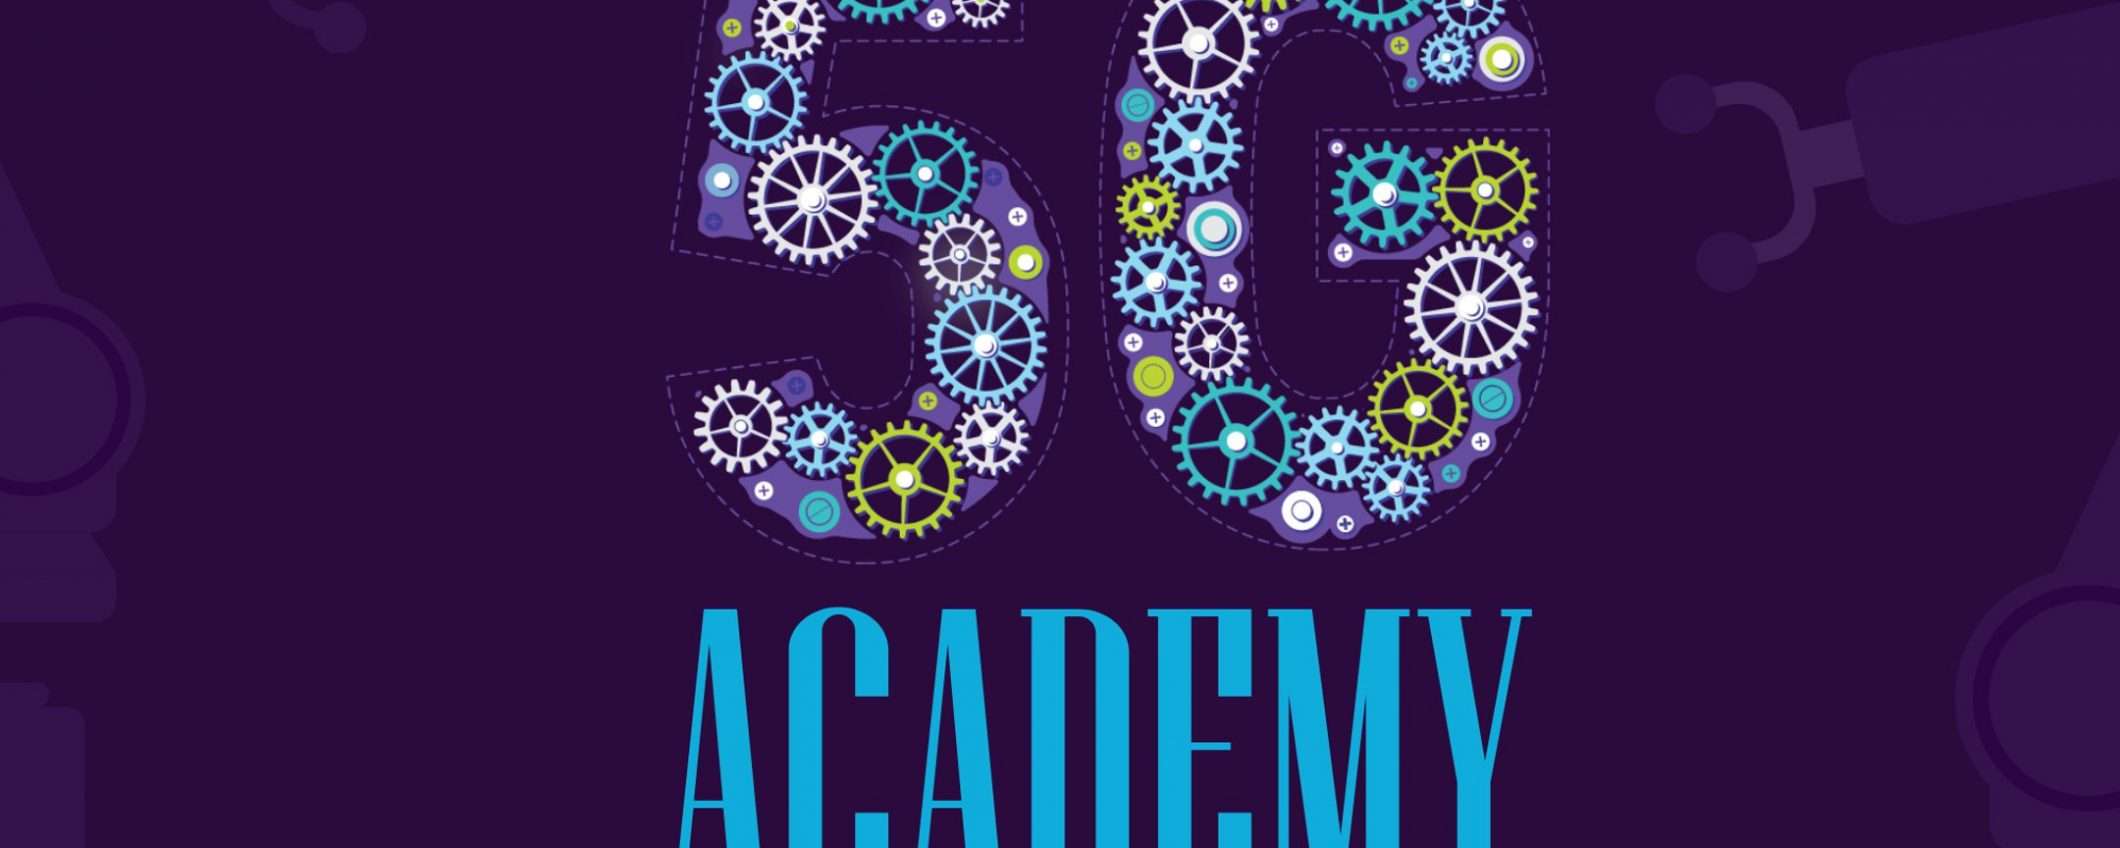 5G Academy: cercasi talenti e modelli di business